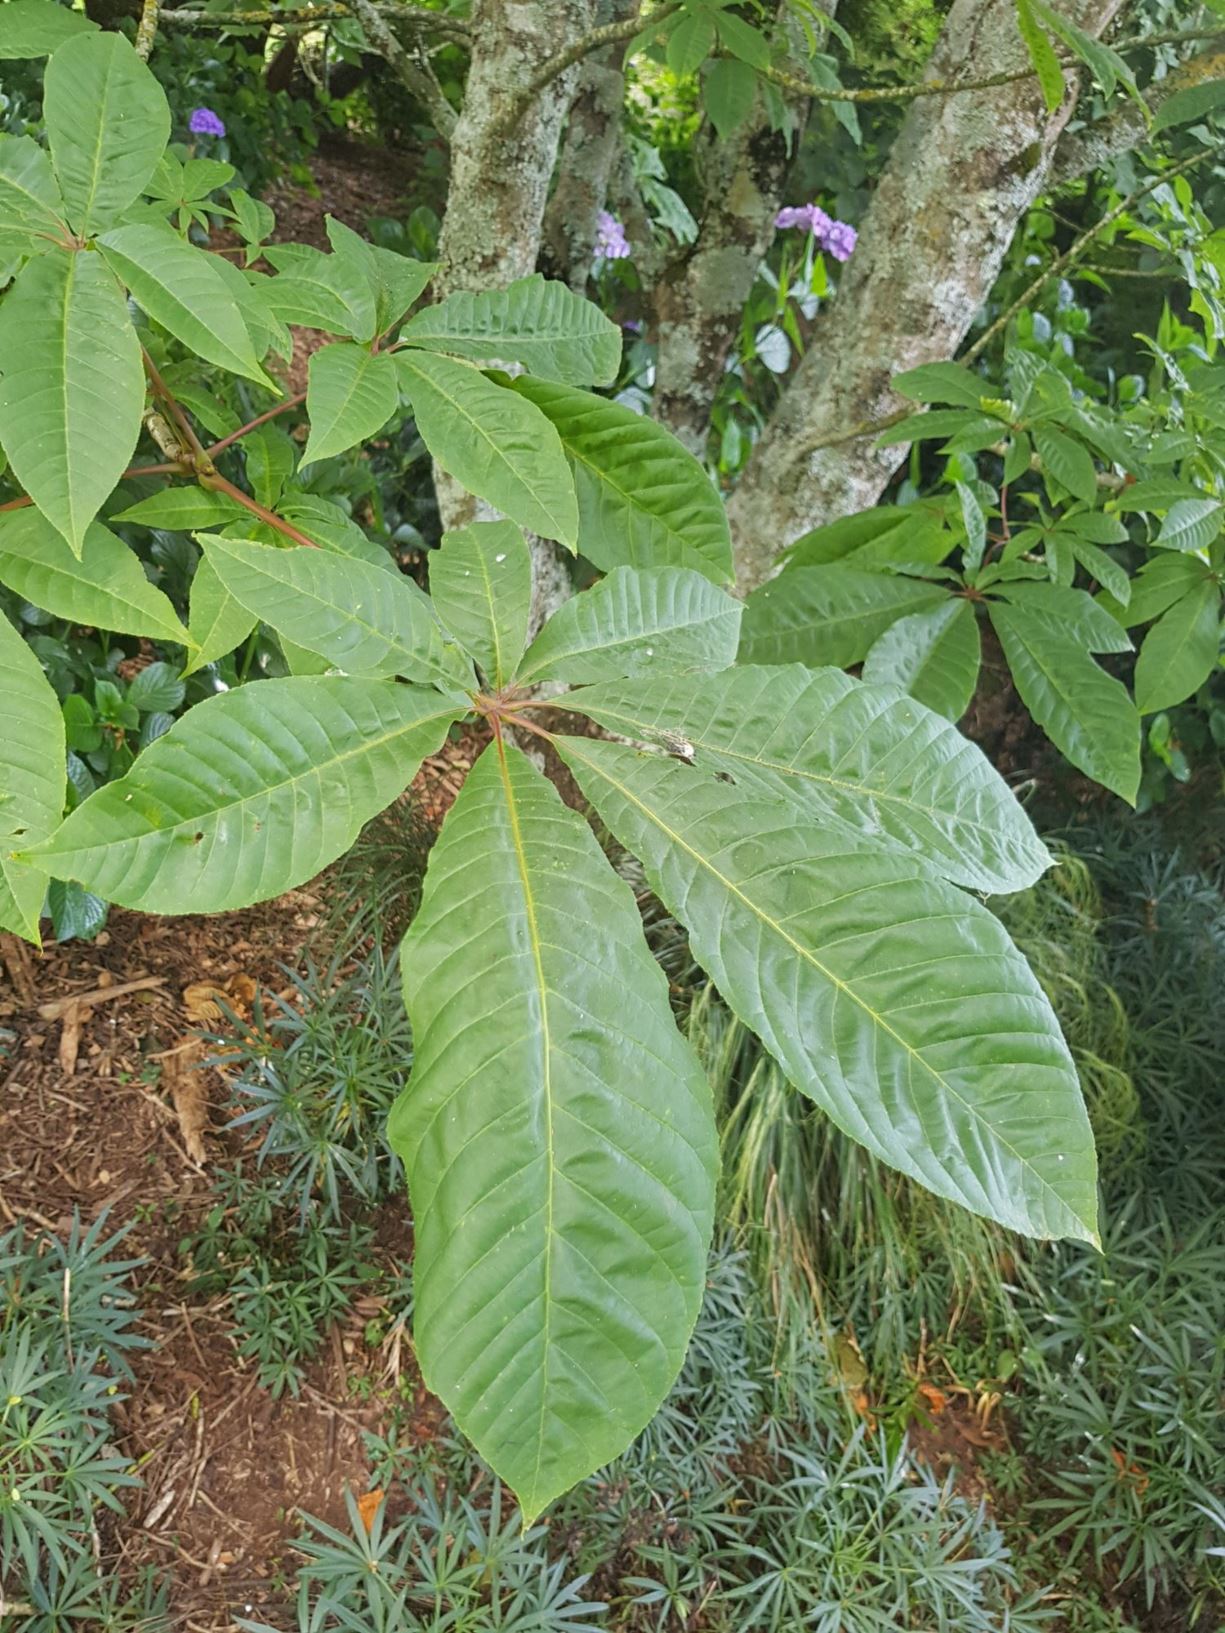 Aesculus indica - Indian horse chestnut